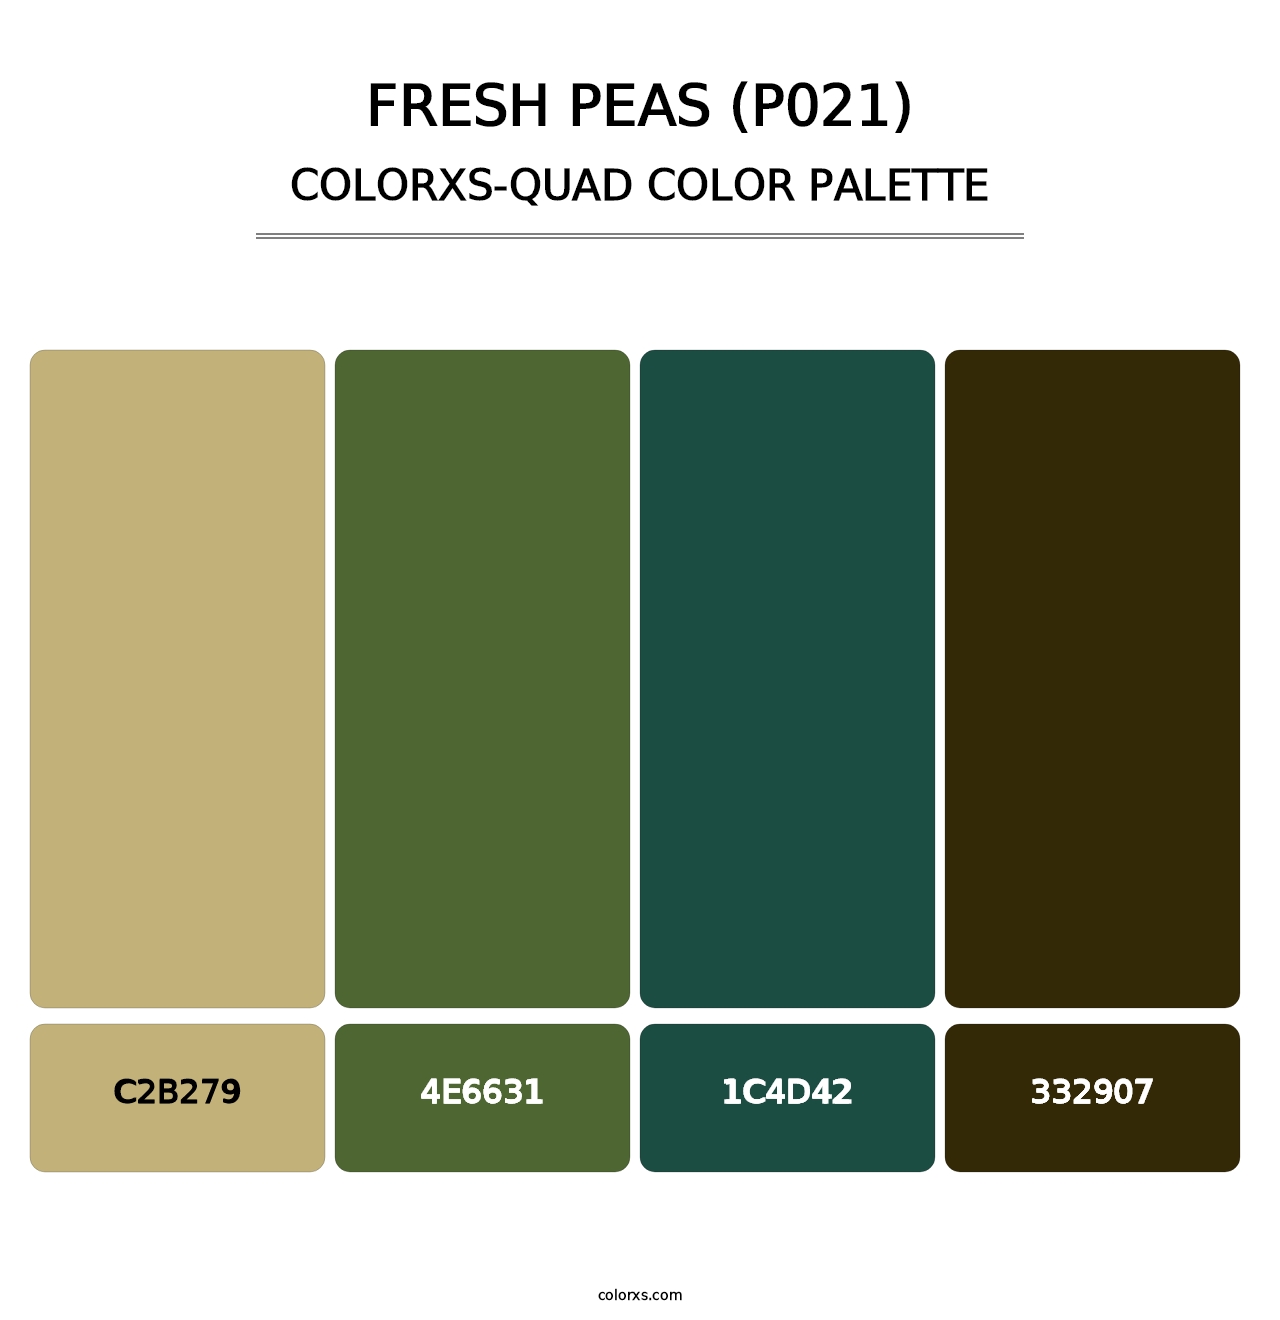 Fresh Peas (P021) - Colorxs Quad Palette